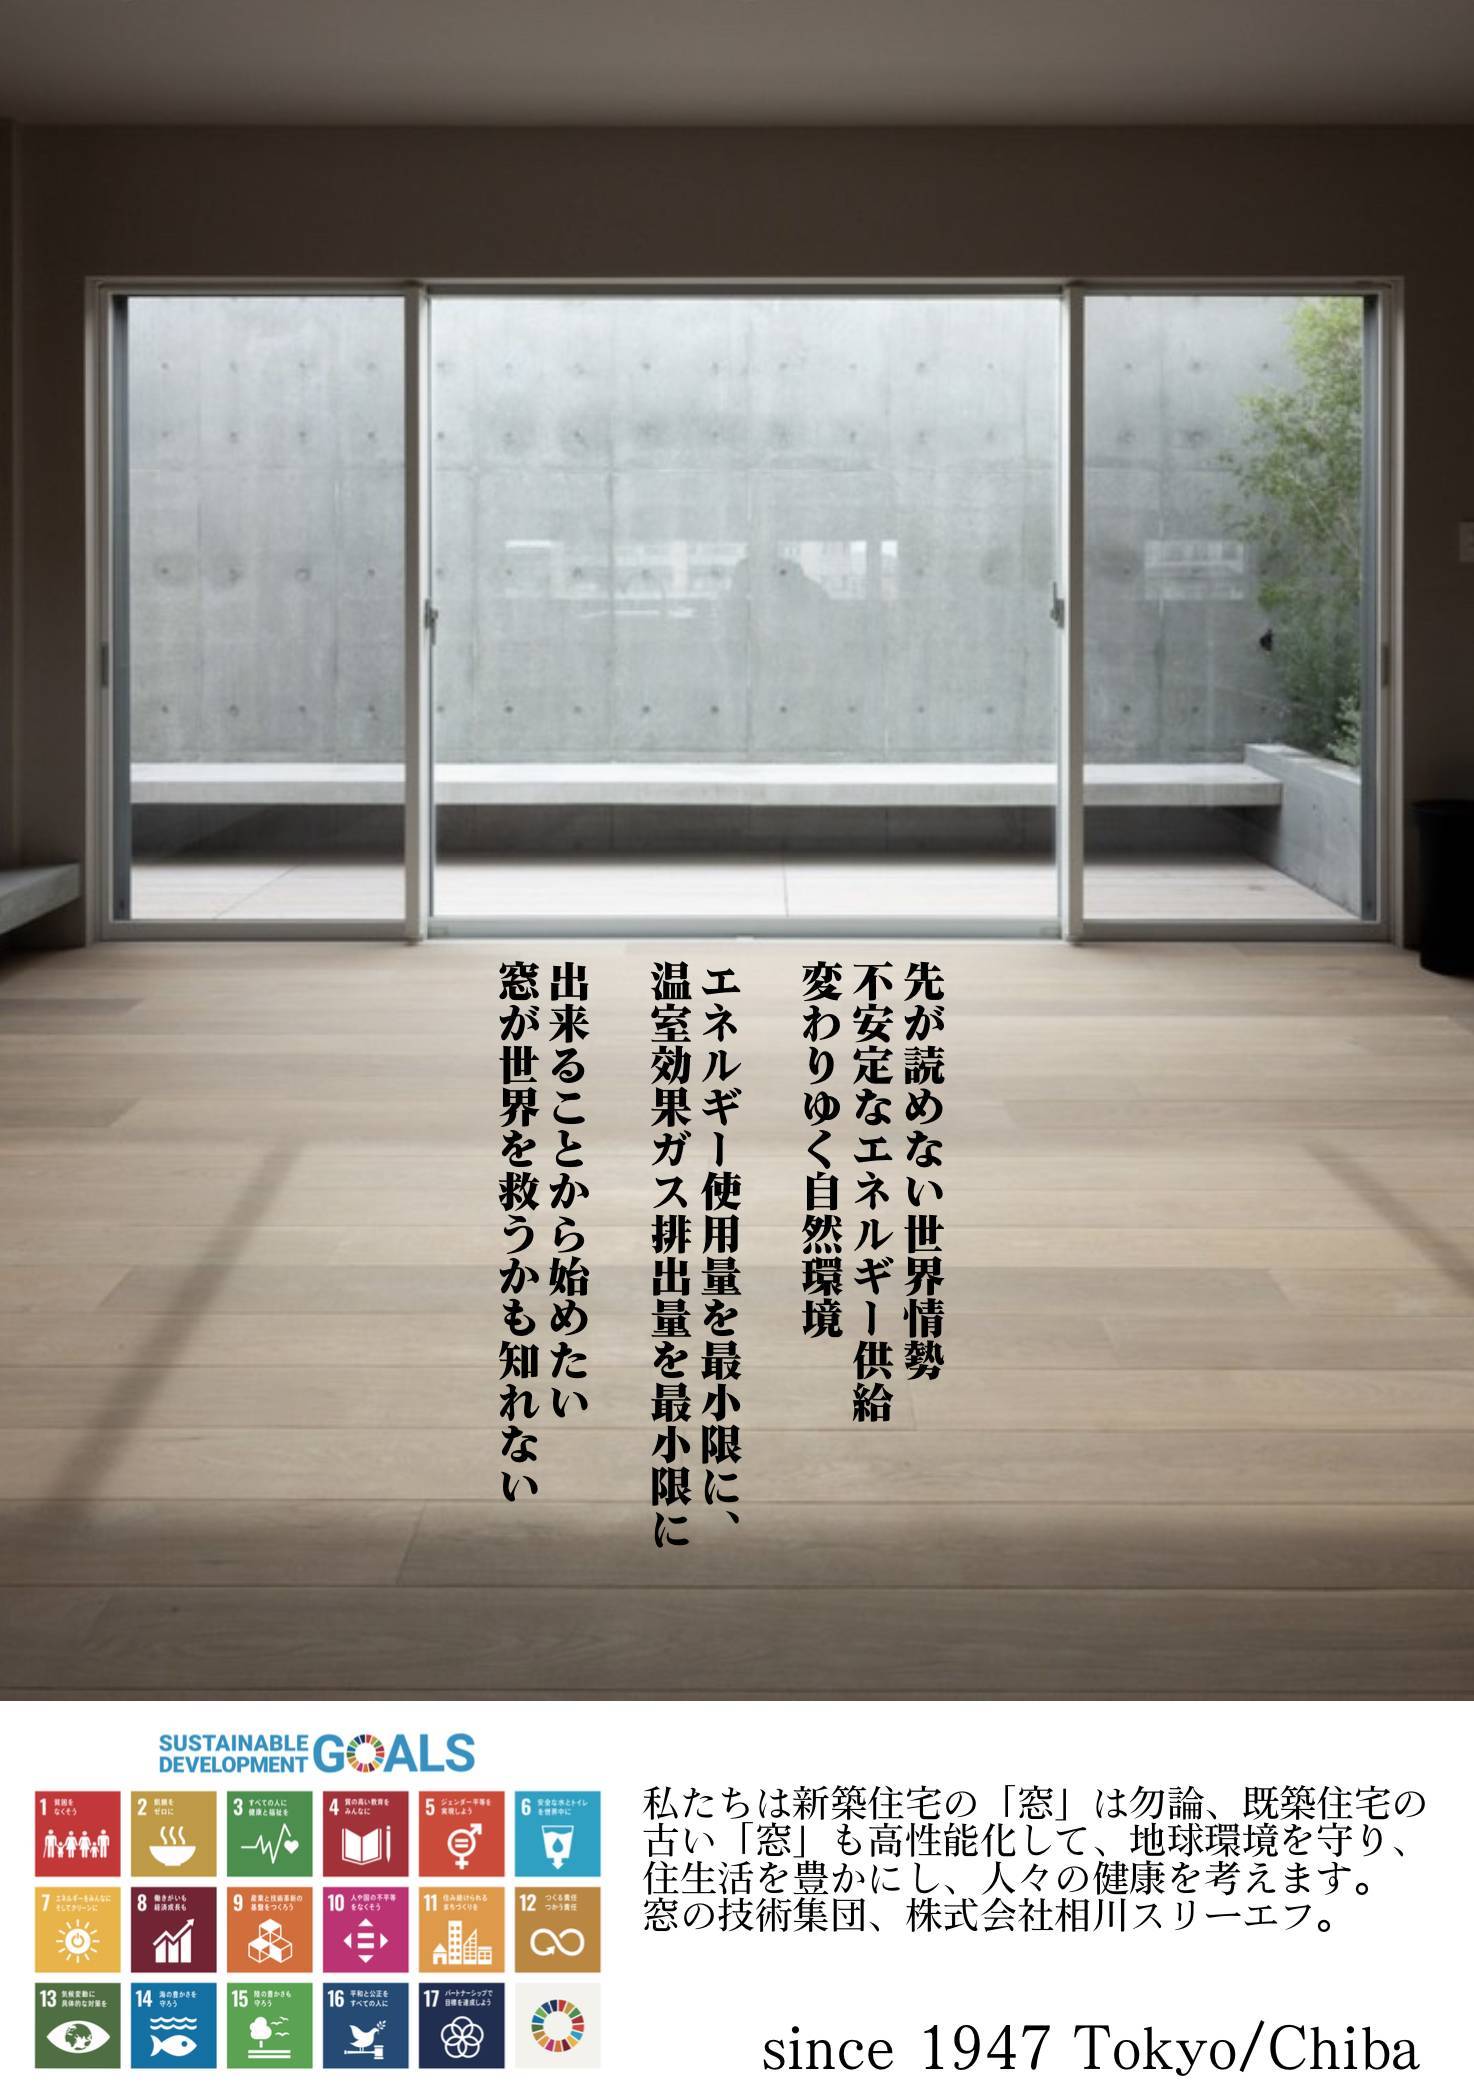 「窓」高性能サッシ取り替えキャンペーン［今がチャンス］ 相川スリーエフのイベントキャンペーン 写真1